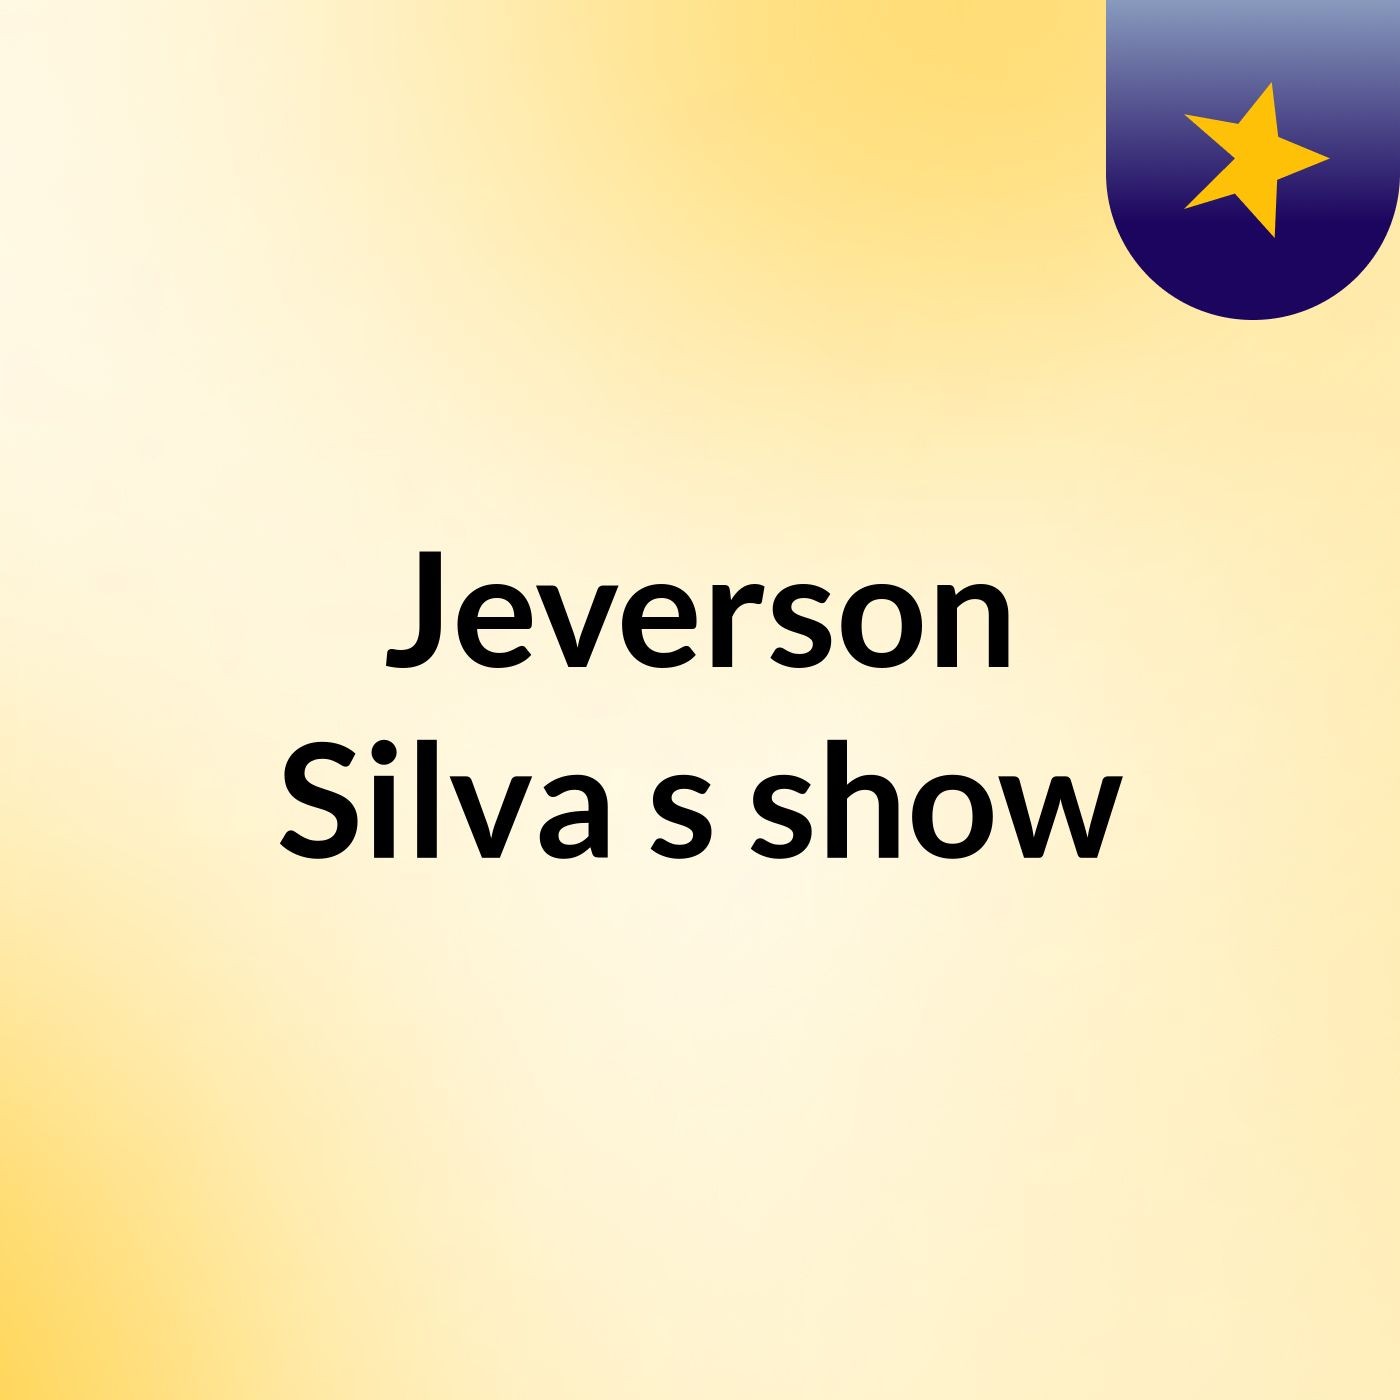 Jeverson Silva's show